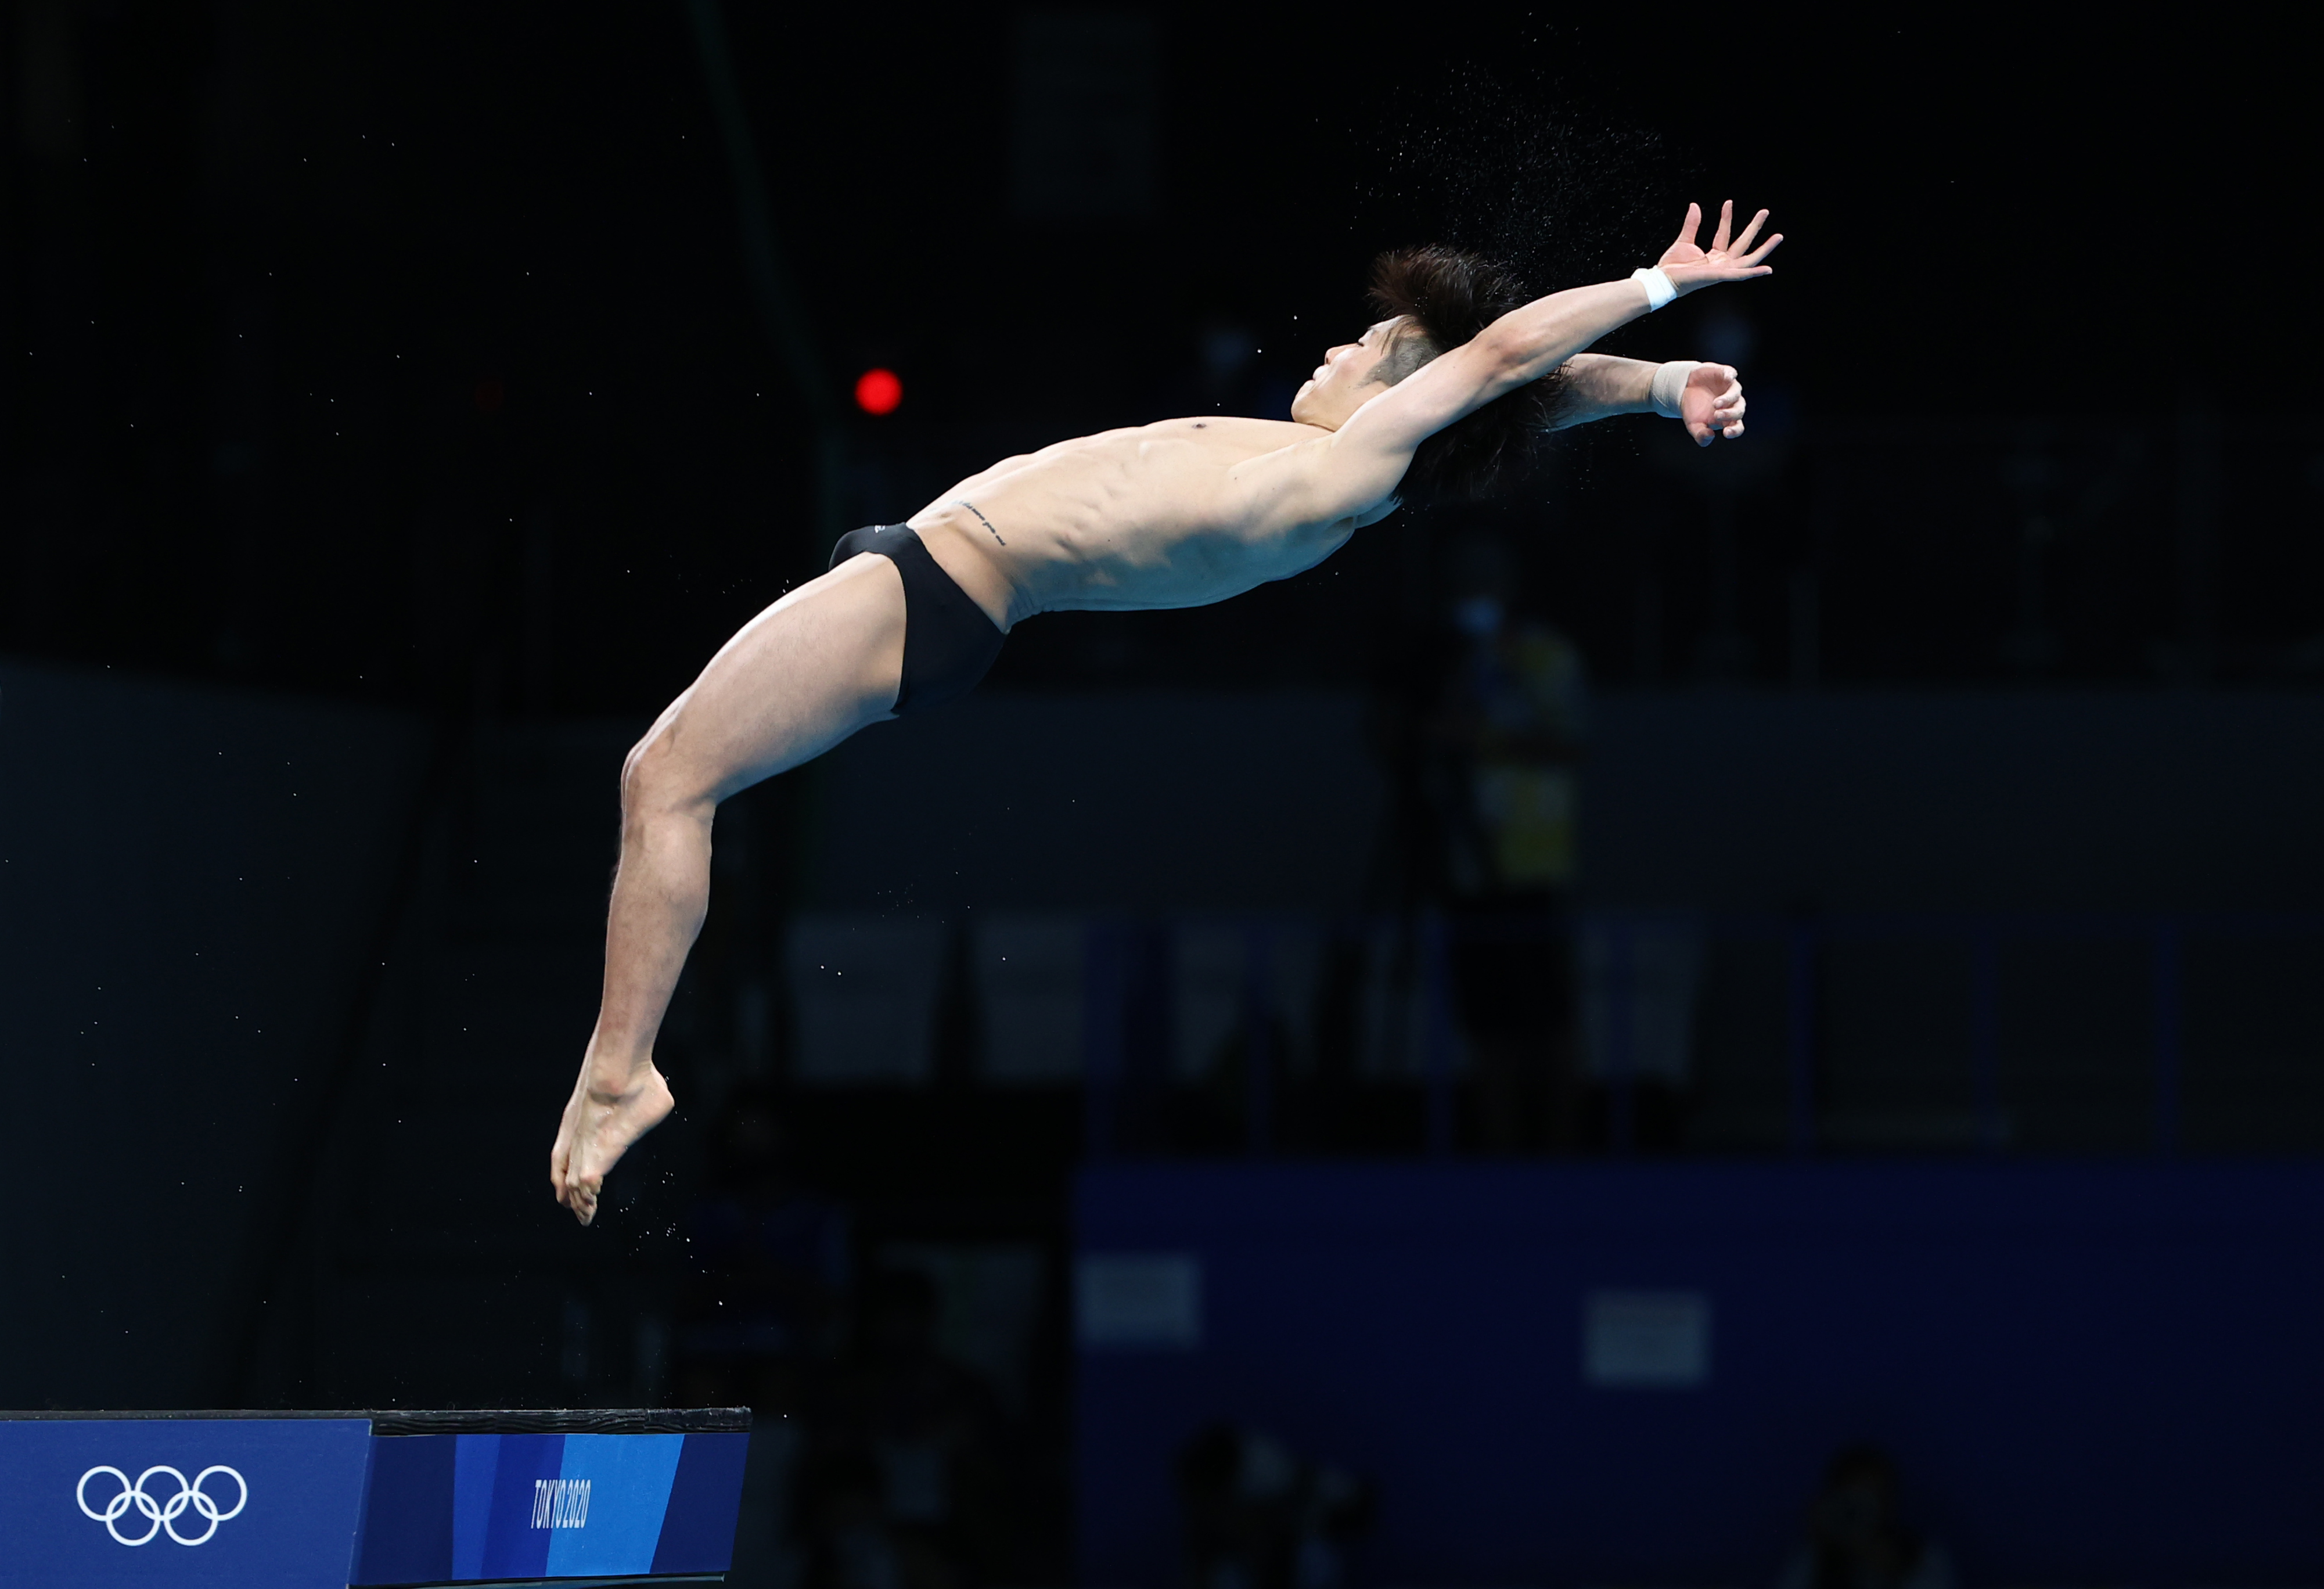 지난 7일 일본 도쿄 아쿠아틱스 센터에서 열린 2020 도쿄올림픽 남자 다이빙 10ｍ 플랫폼 준결승전에서 한국 우하람이 다이빙 연기를 선보이고 있다. [사진출처 : 연합뉴스]